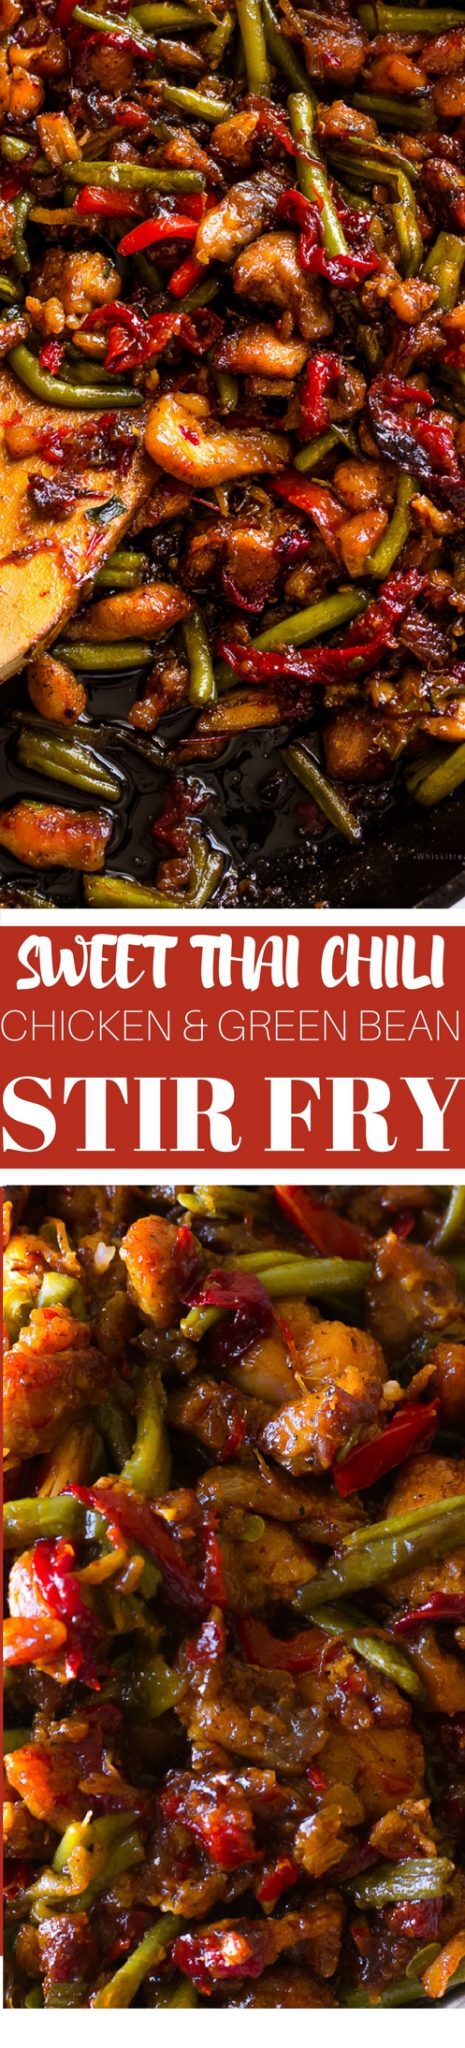 Thai Stir fry